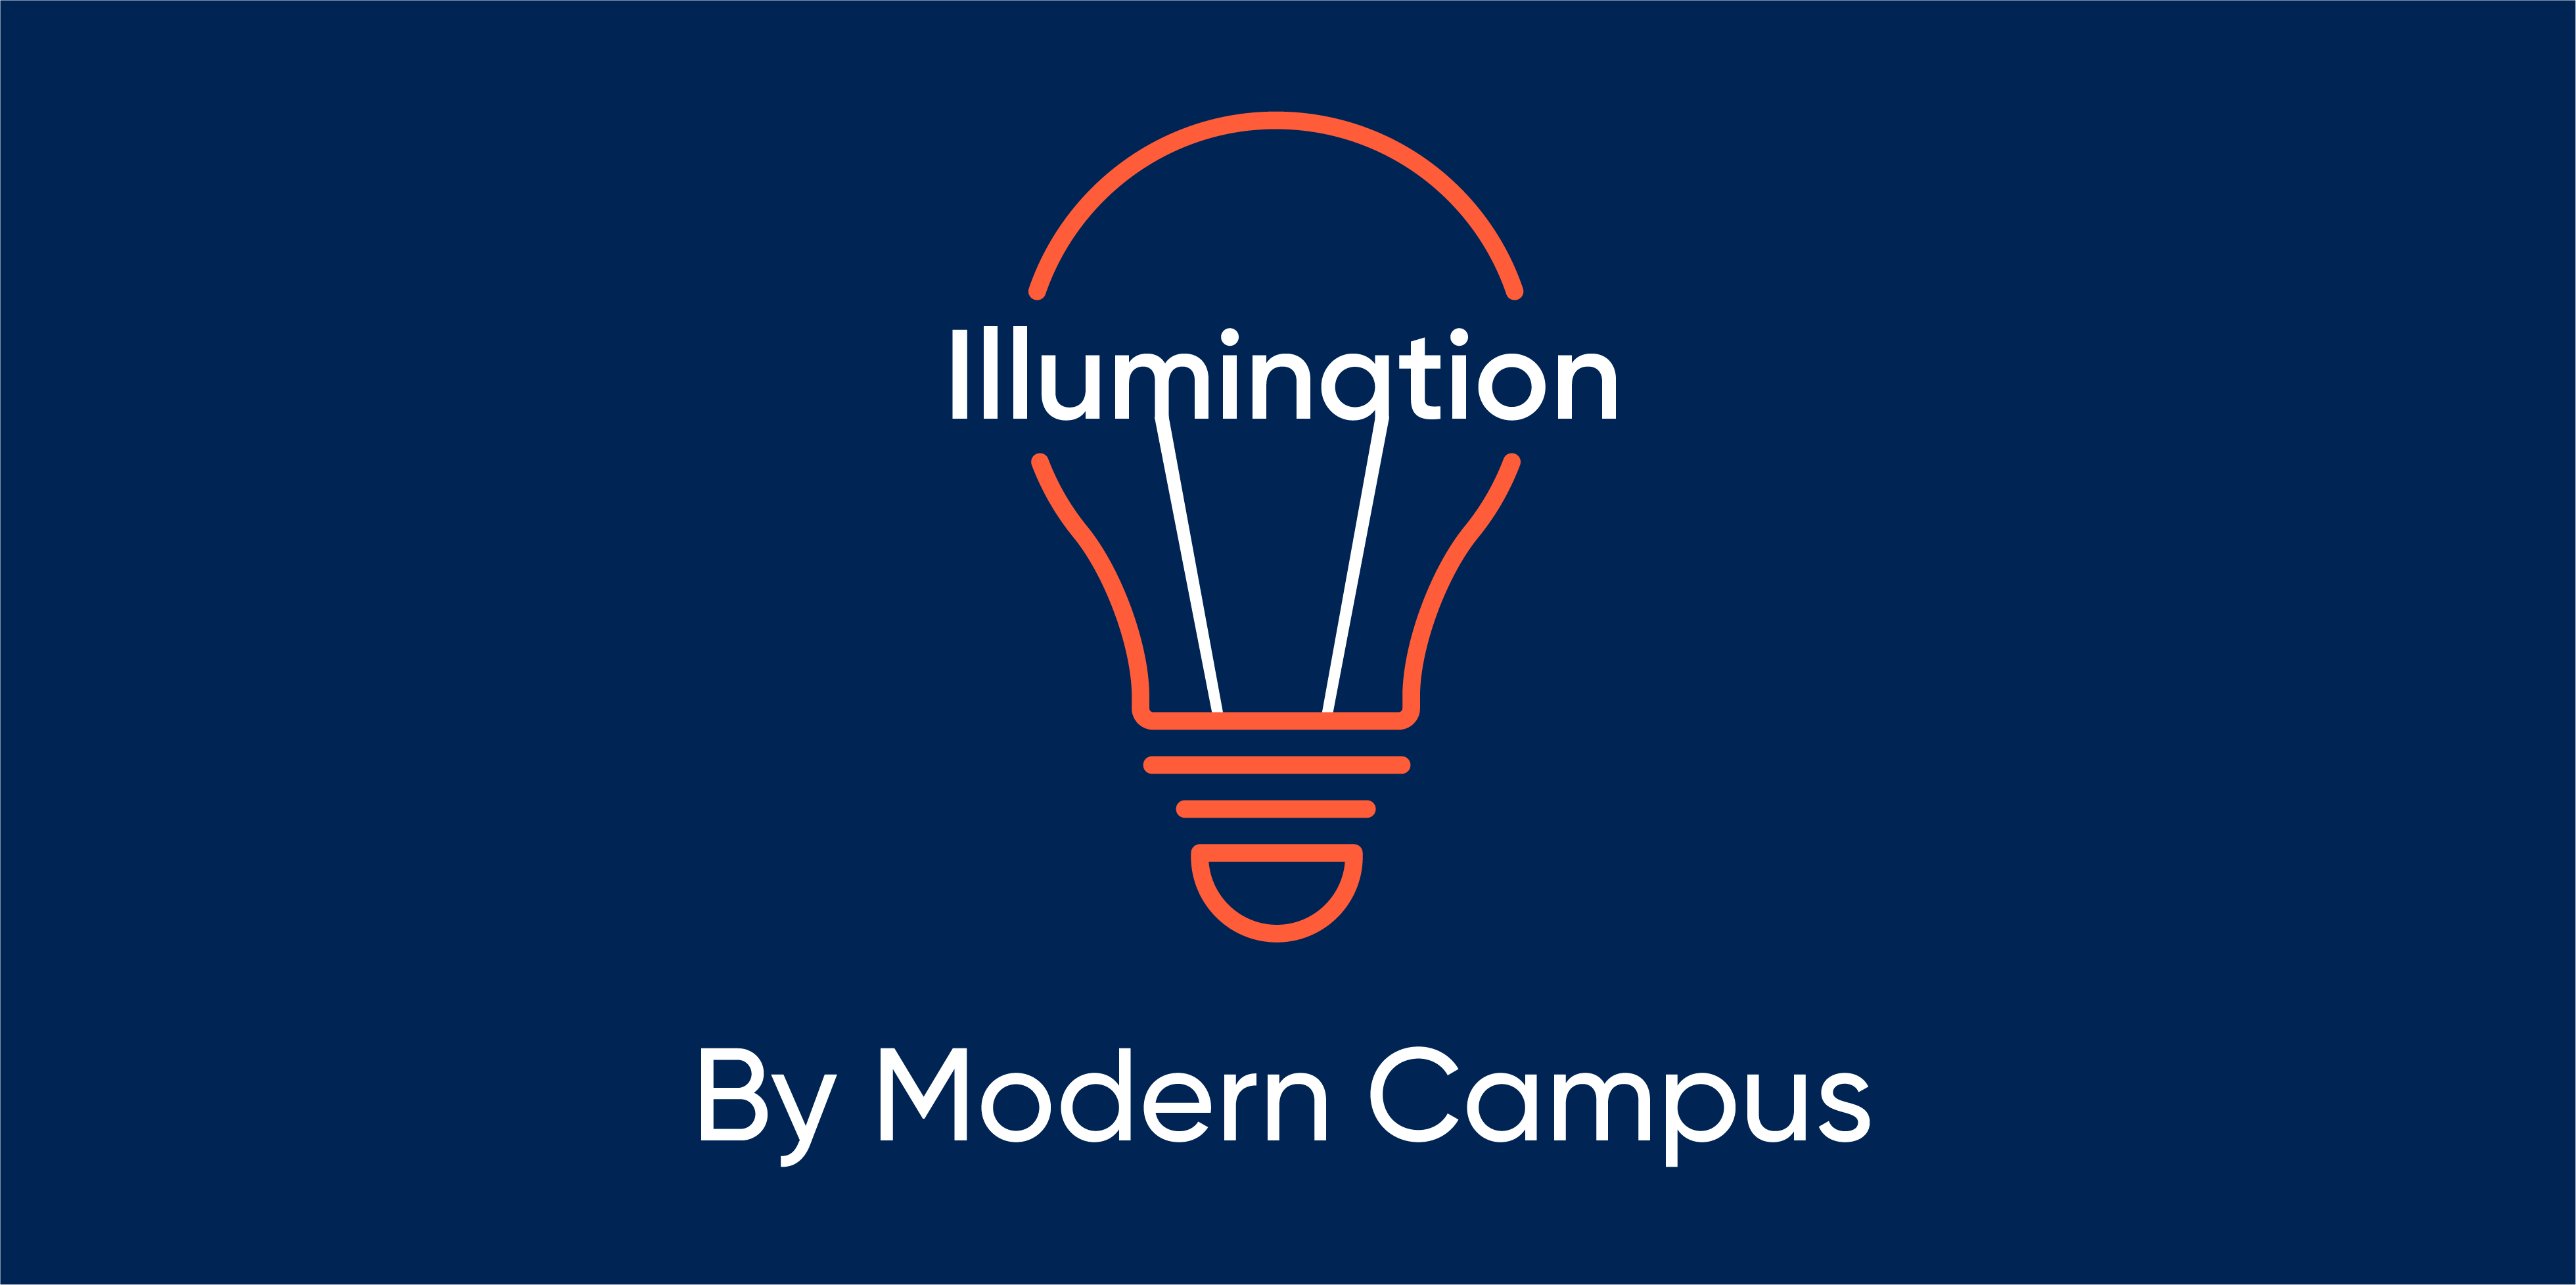 Episode 87: Illumination by Modern Campus